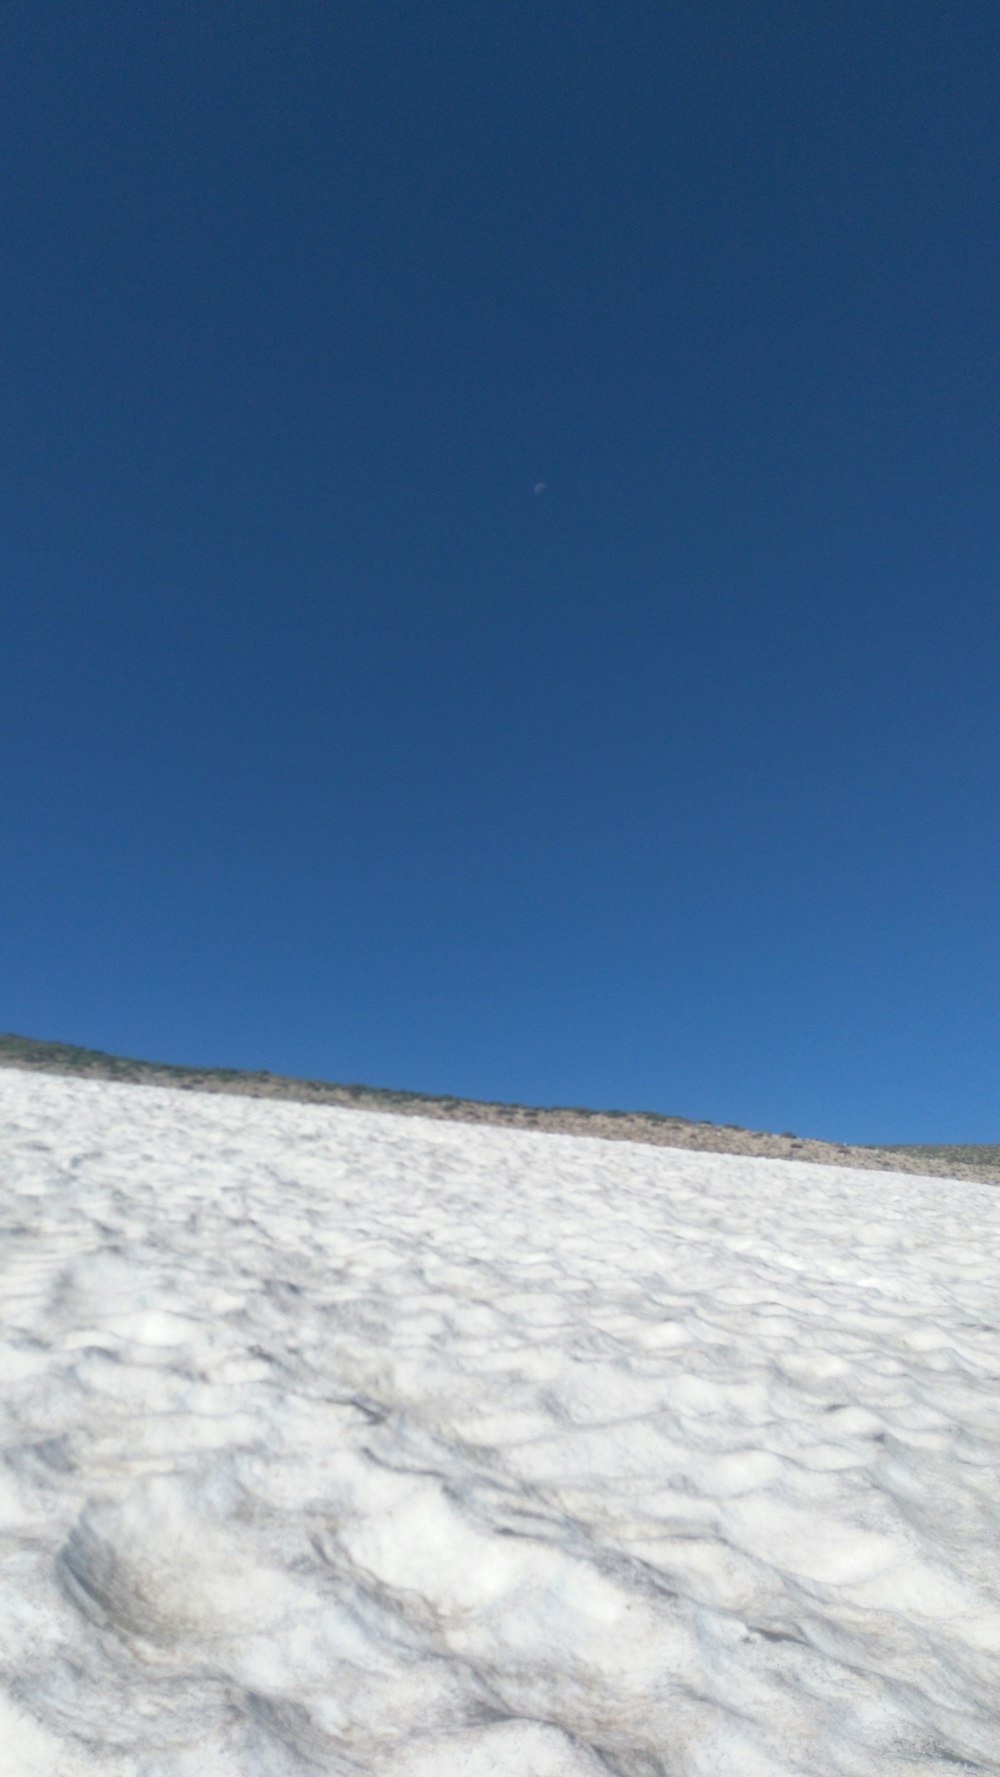 Un snowboarder descend une colline enneigée